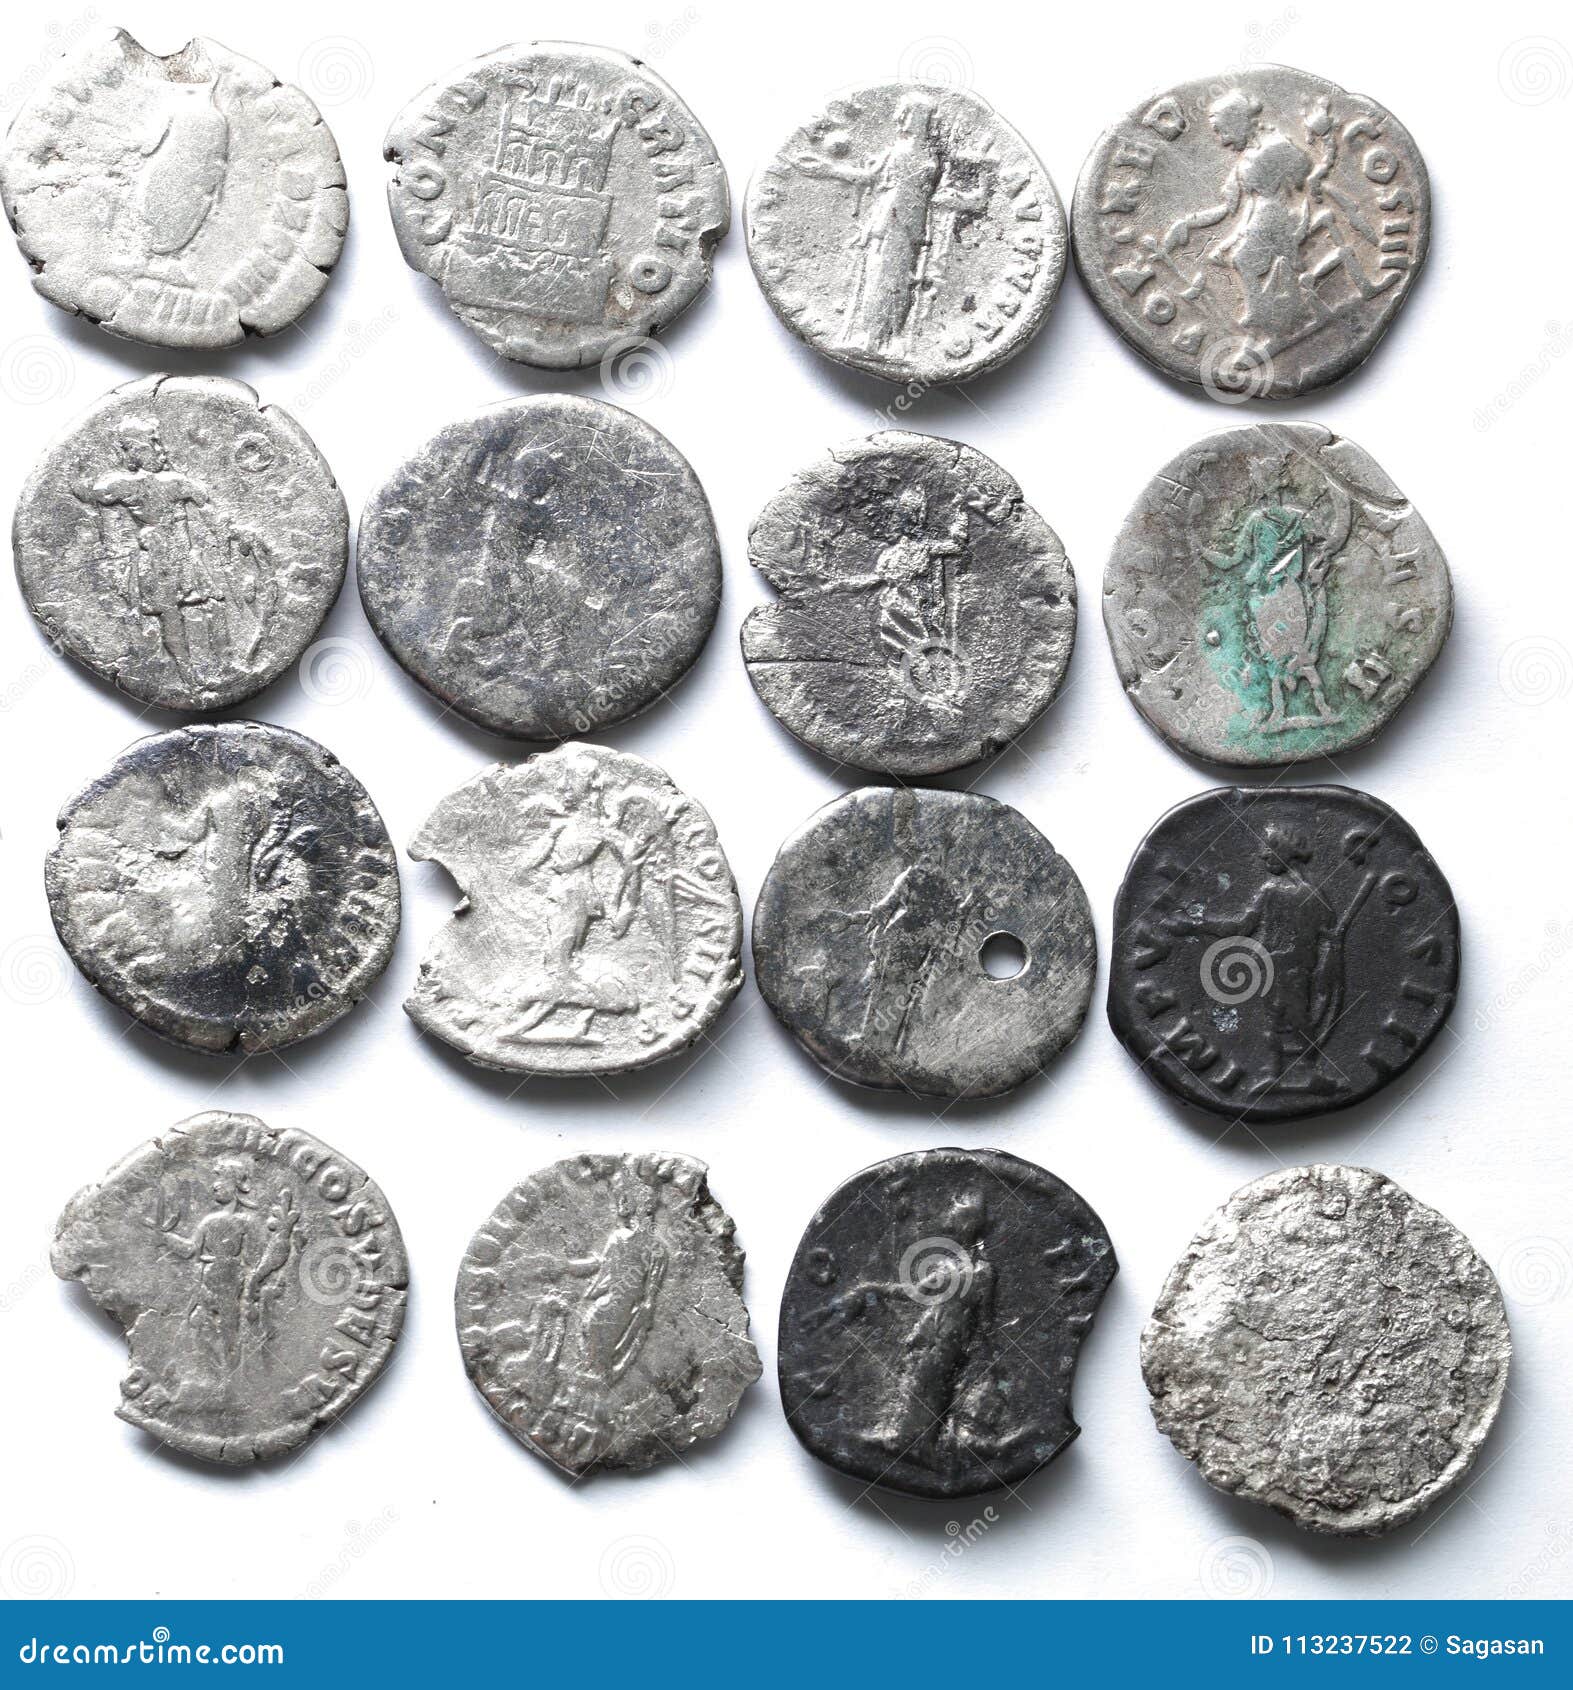 Roman denarius stock photo. Image of collection, silver - 113237522